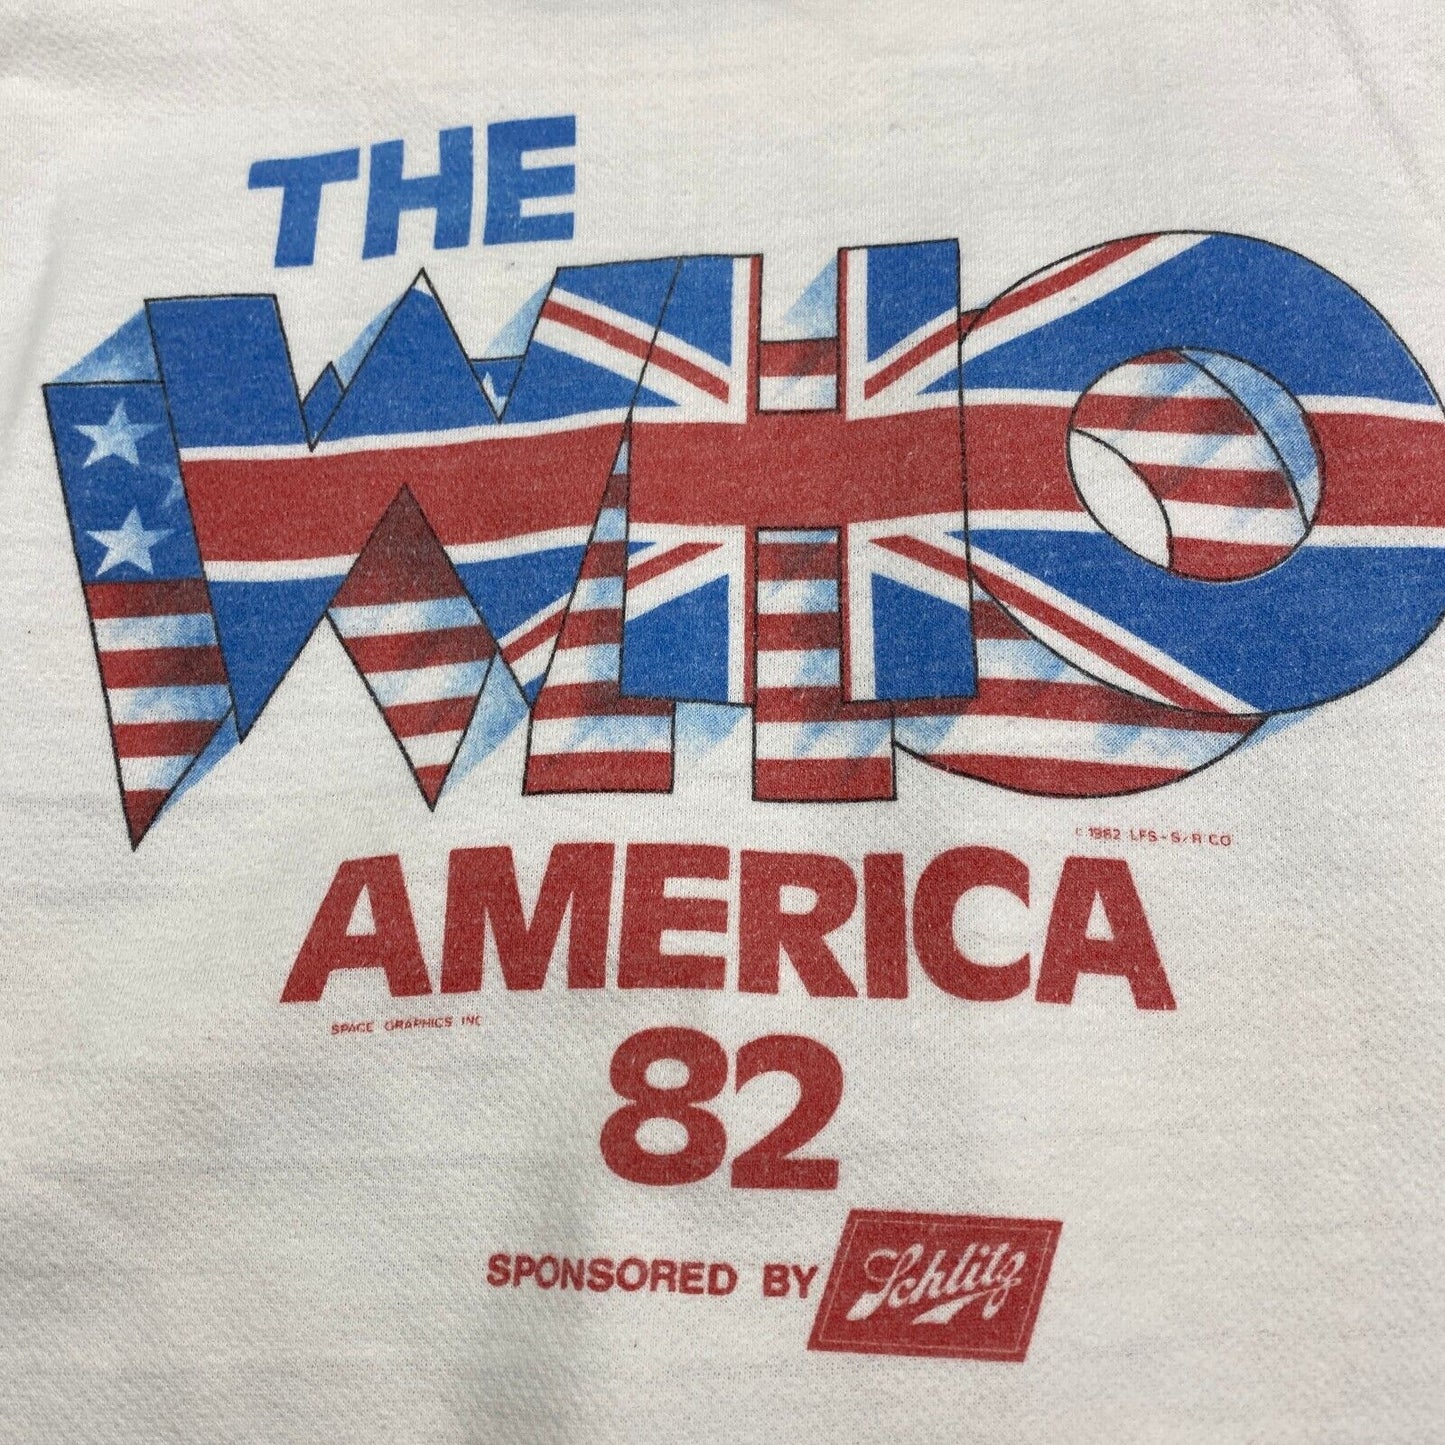 VINTAGE 1982 THE WHO Band Sleeveless White Sweater sz Medium Adult